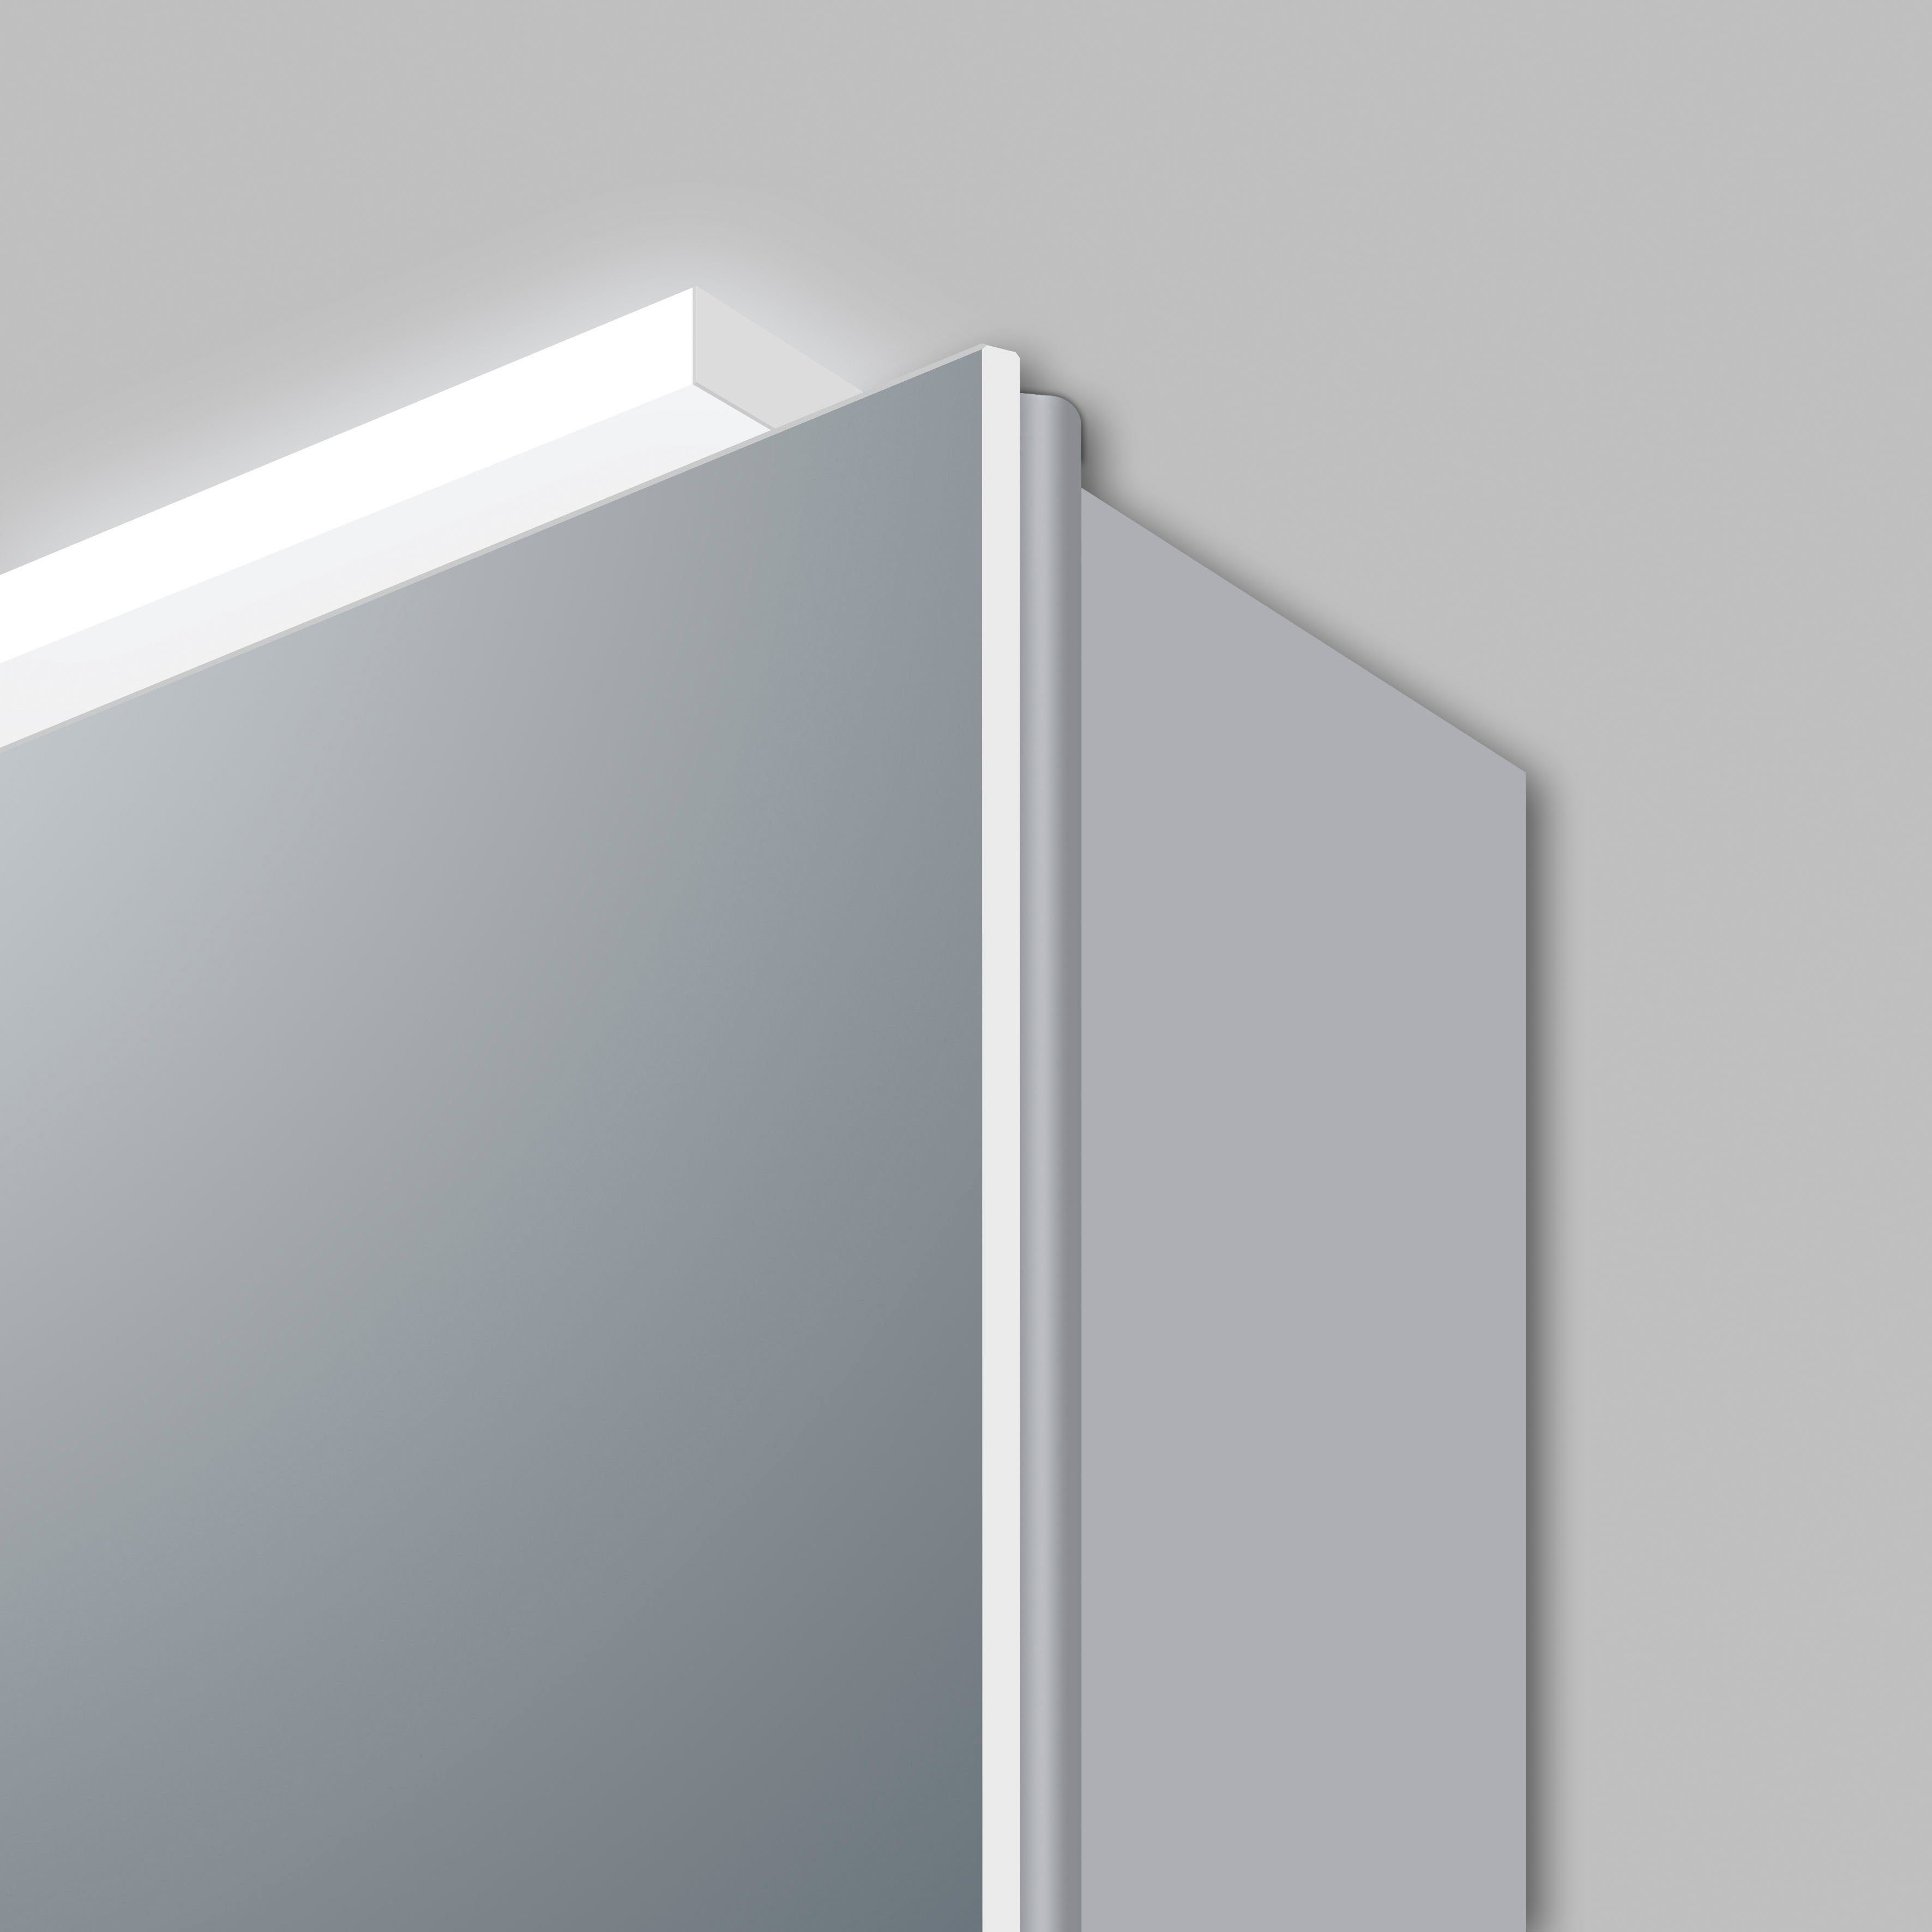 Talos Spiegelschrank Silver Magic LED-Beleuchtung, verschiedene Größen mit